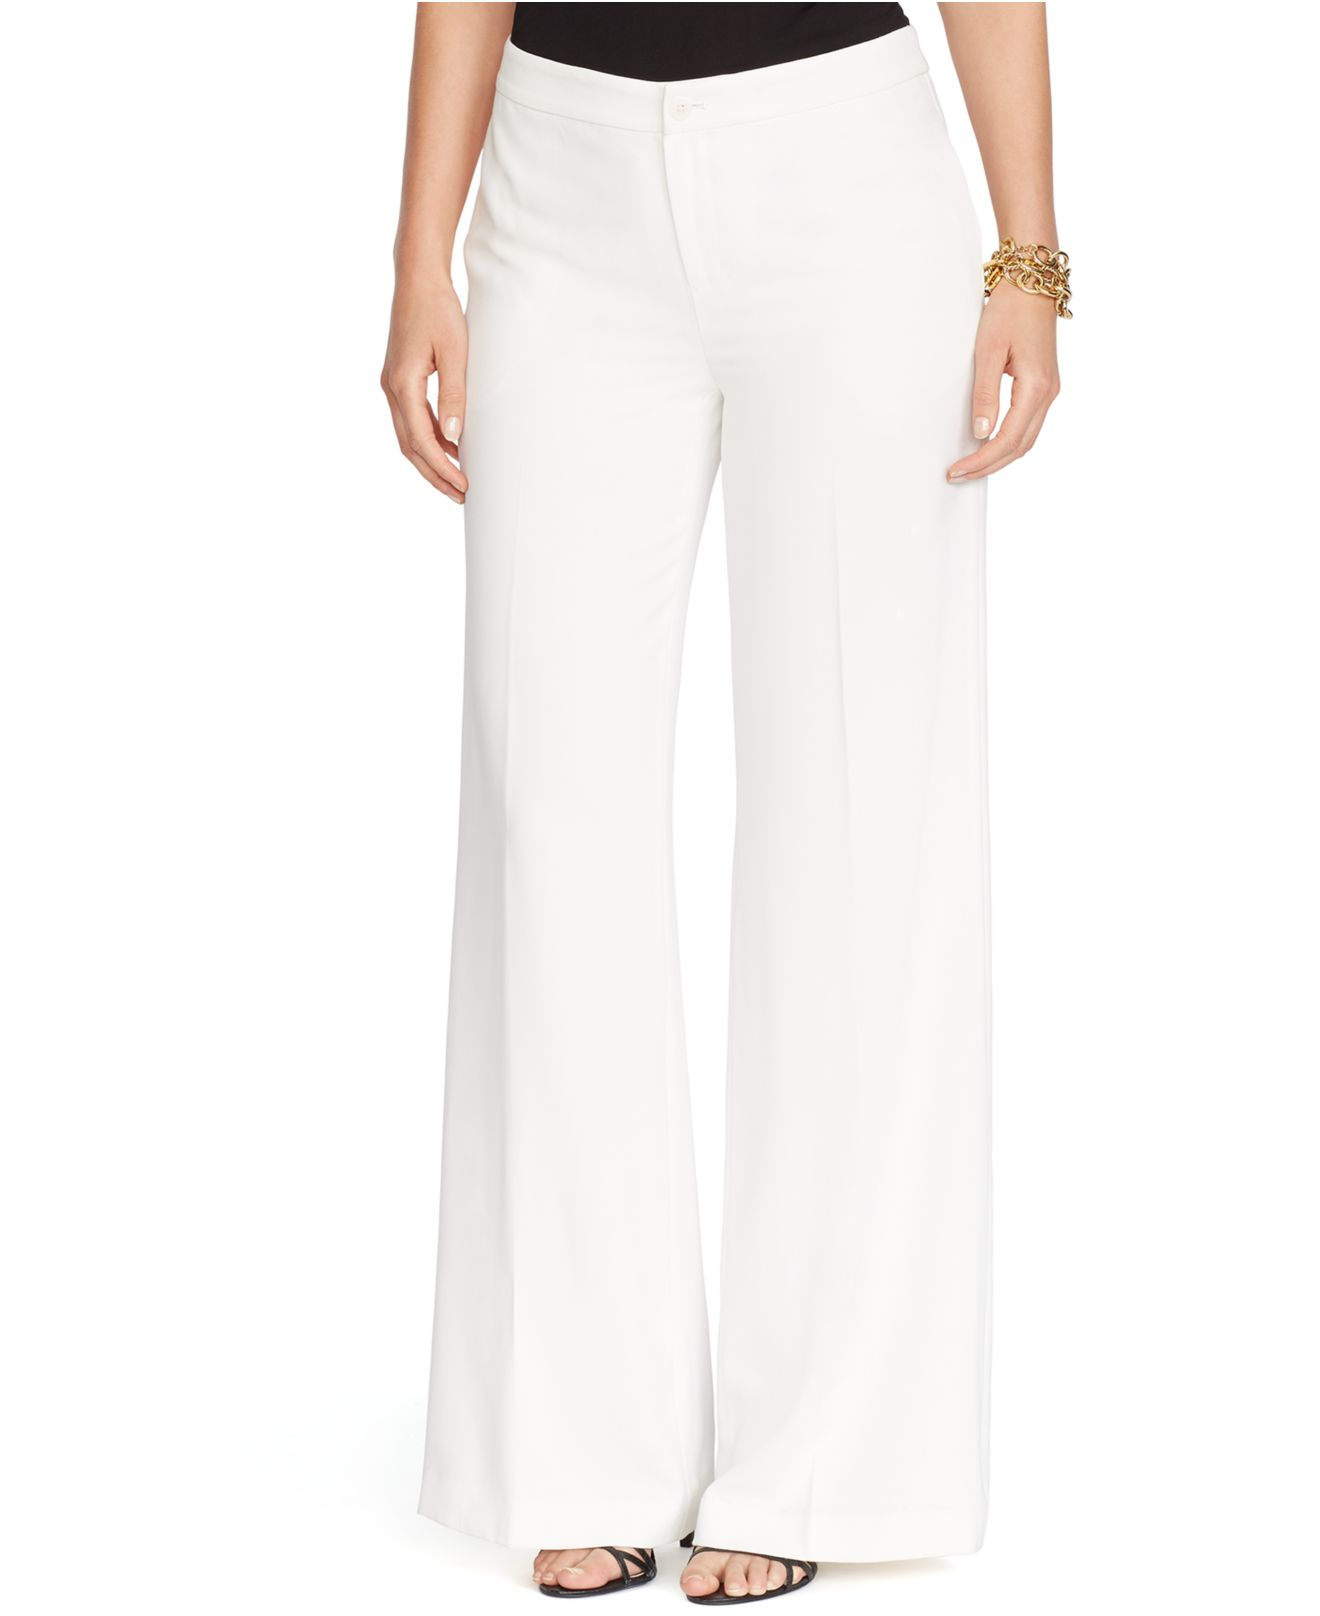 Lauren by Ralph Lauren Plus Size Wide-Leg Pants in Pearl (White) - Lyst